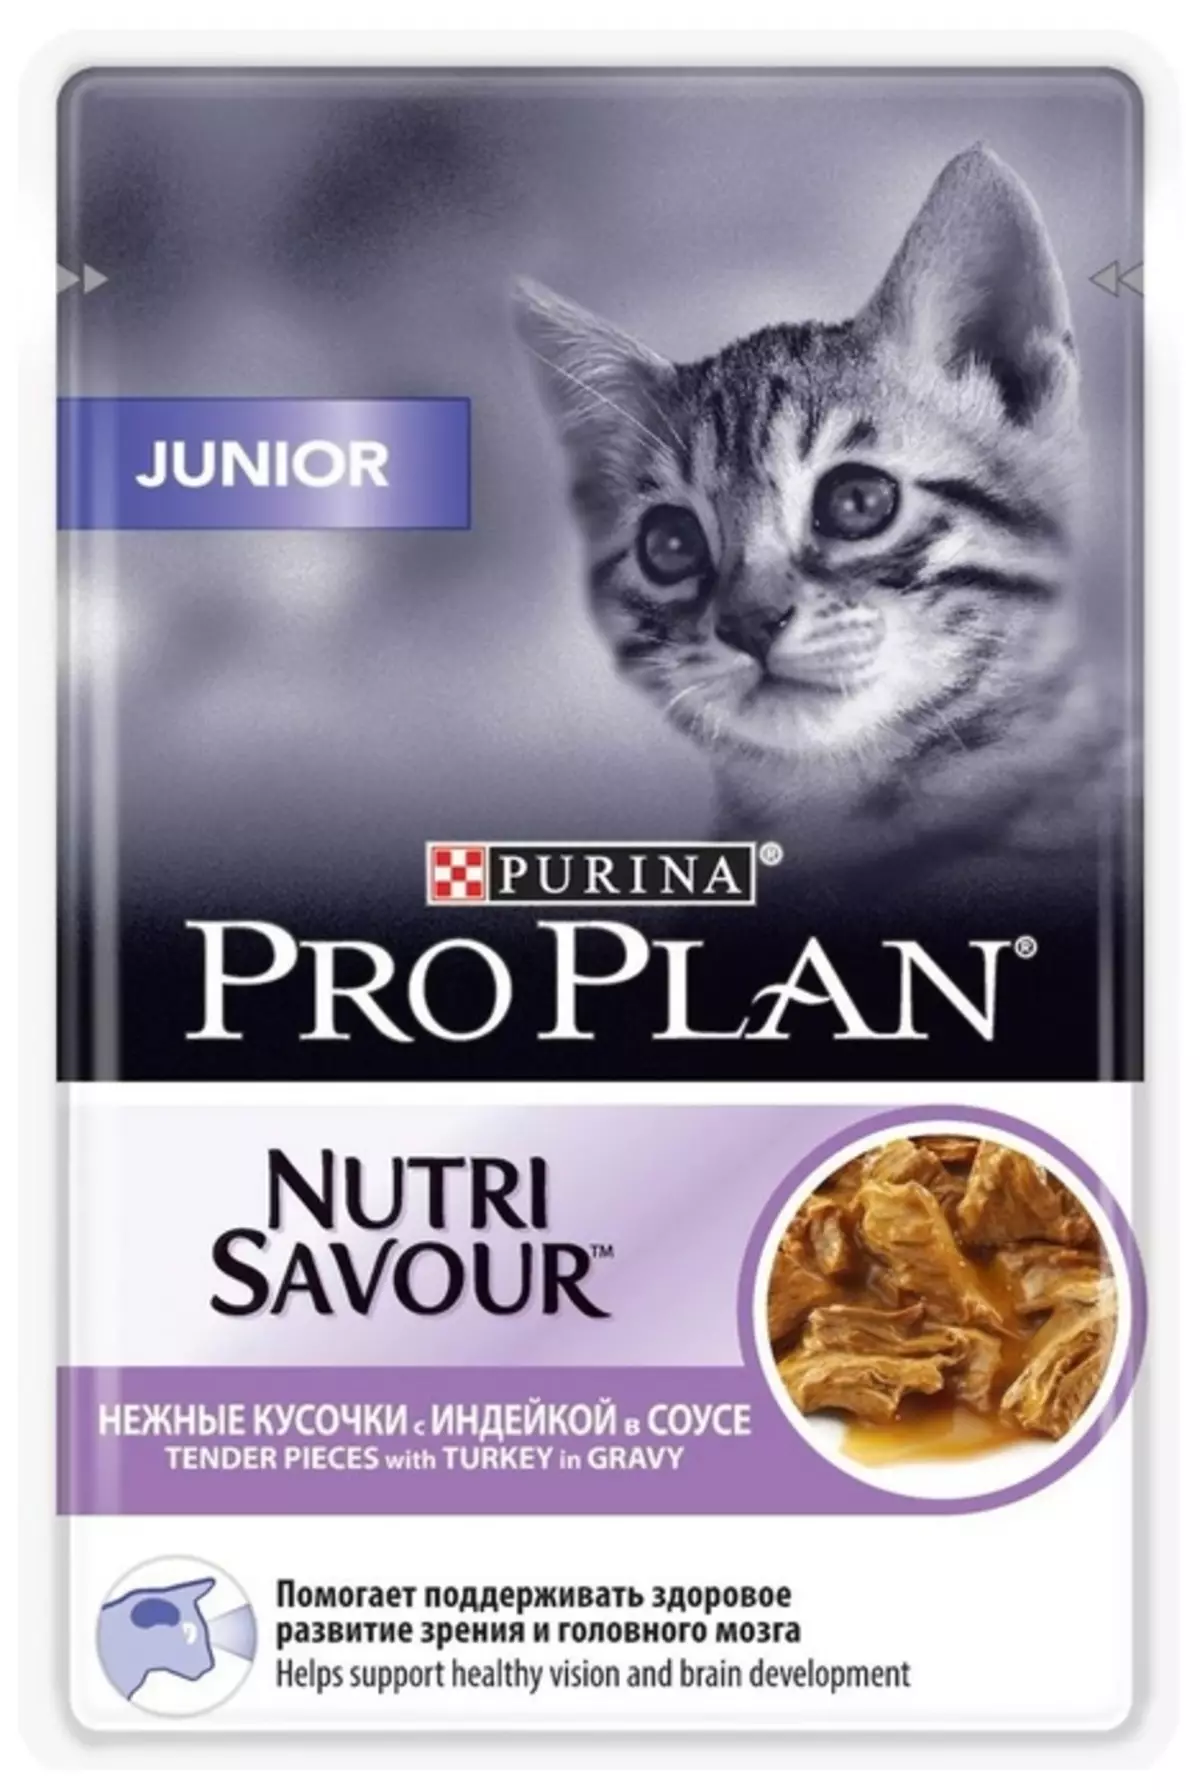 Mouye Feed Purina Pro Plan pou Kittens: Konpozisyon nan Patestones. Pugi ak nan bwat jinyò, revizyon yo 22017_10